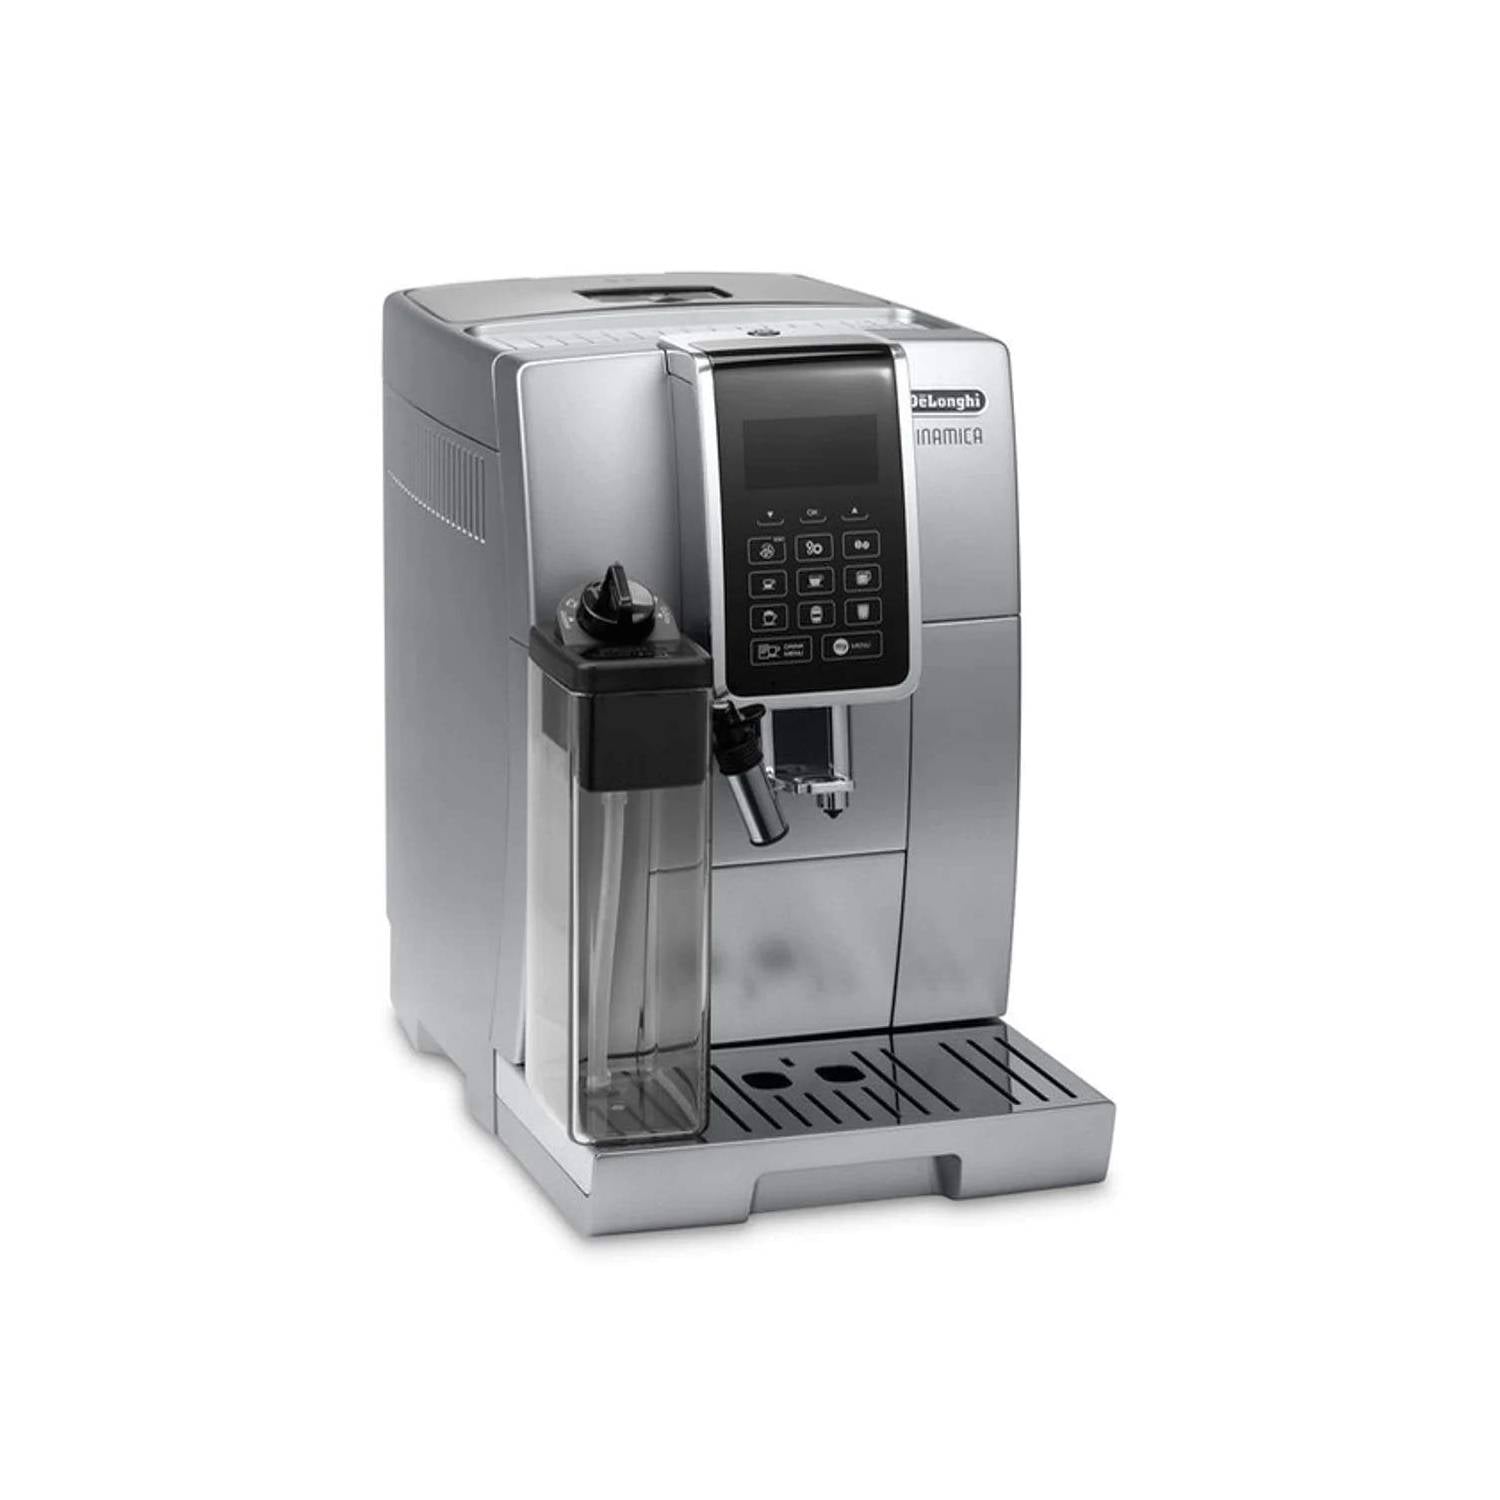 Delonghi - Machine automatique Dinamica 3535 + 2kg de café offerts